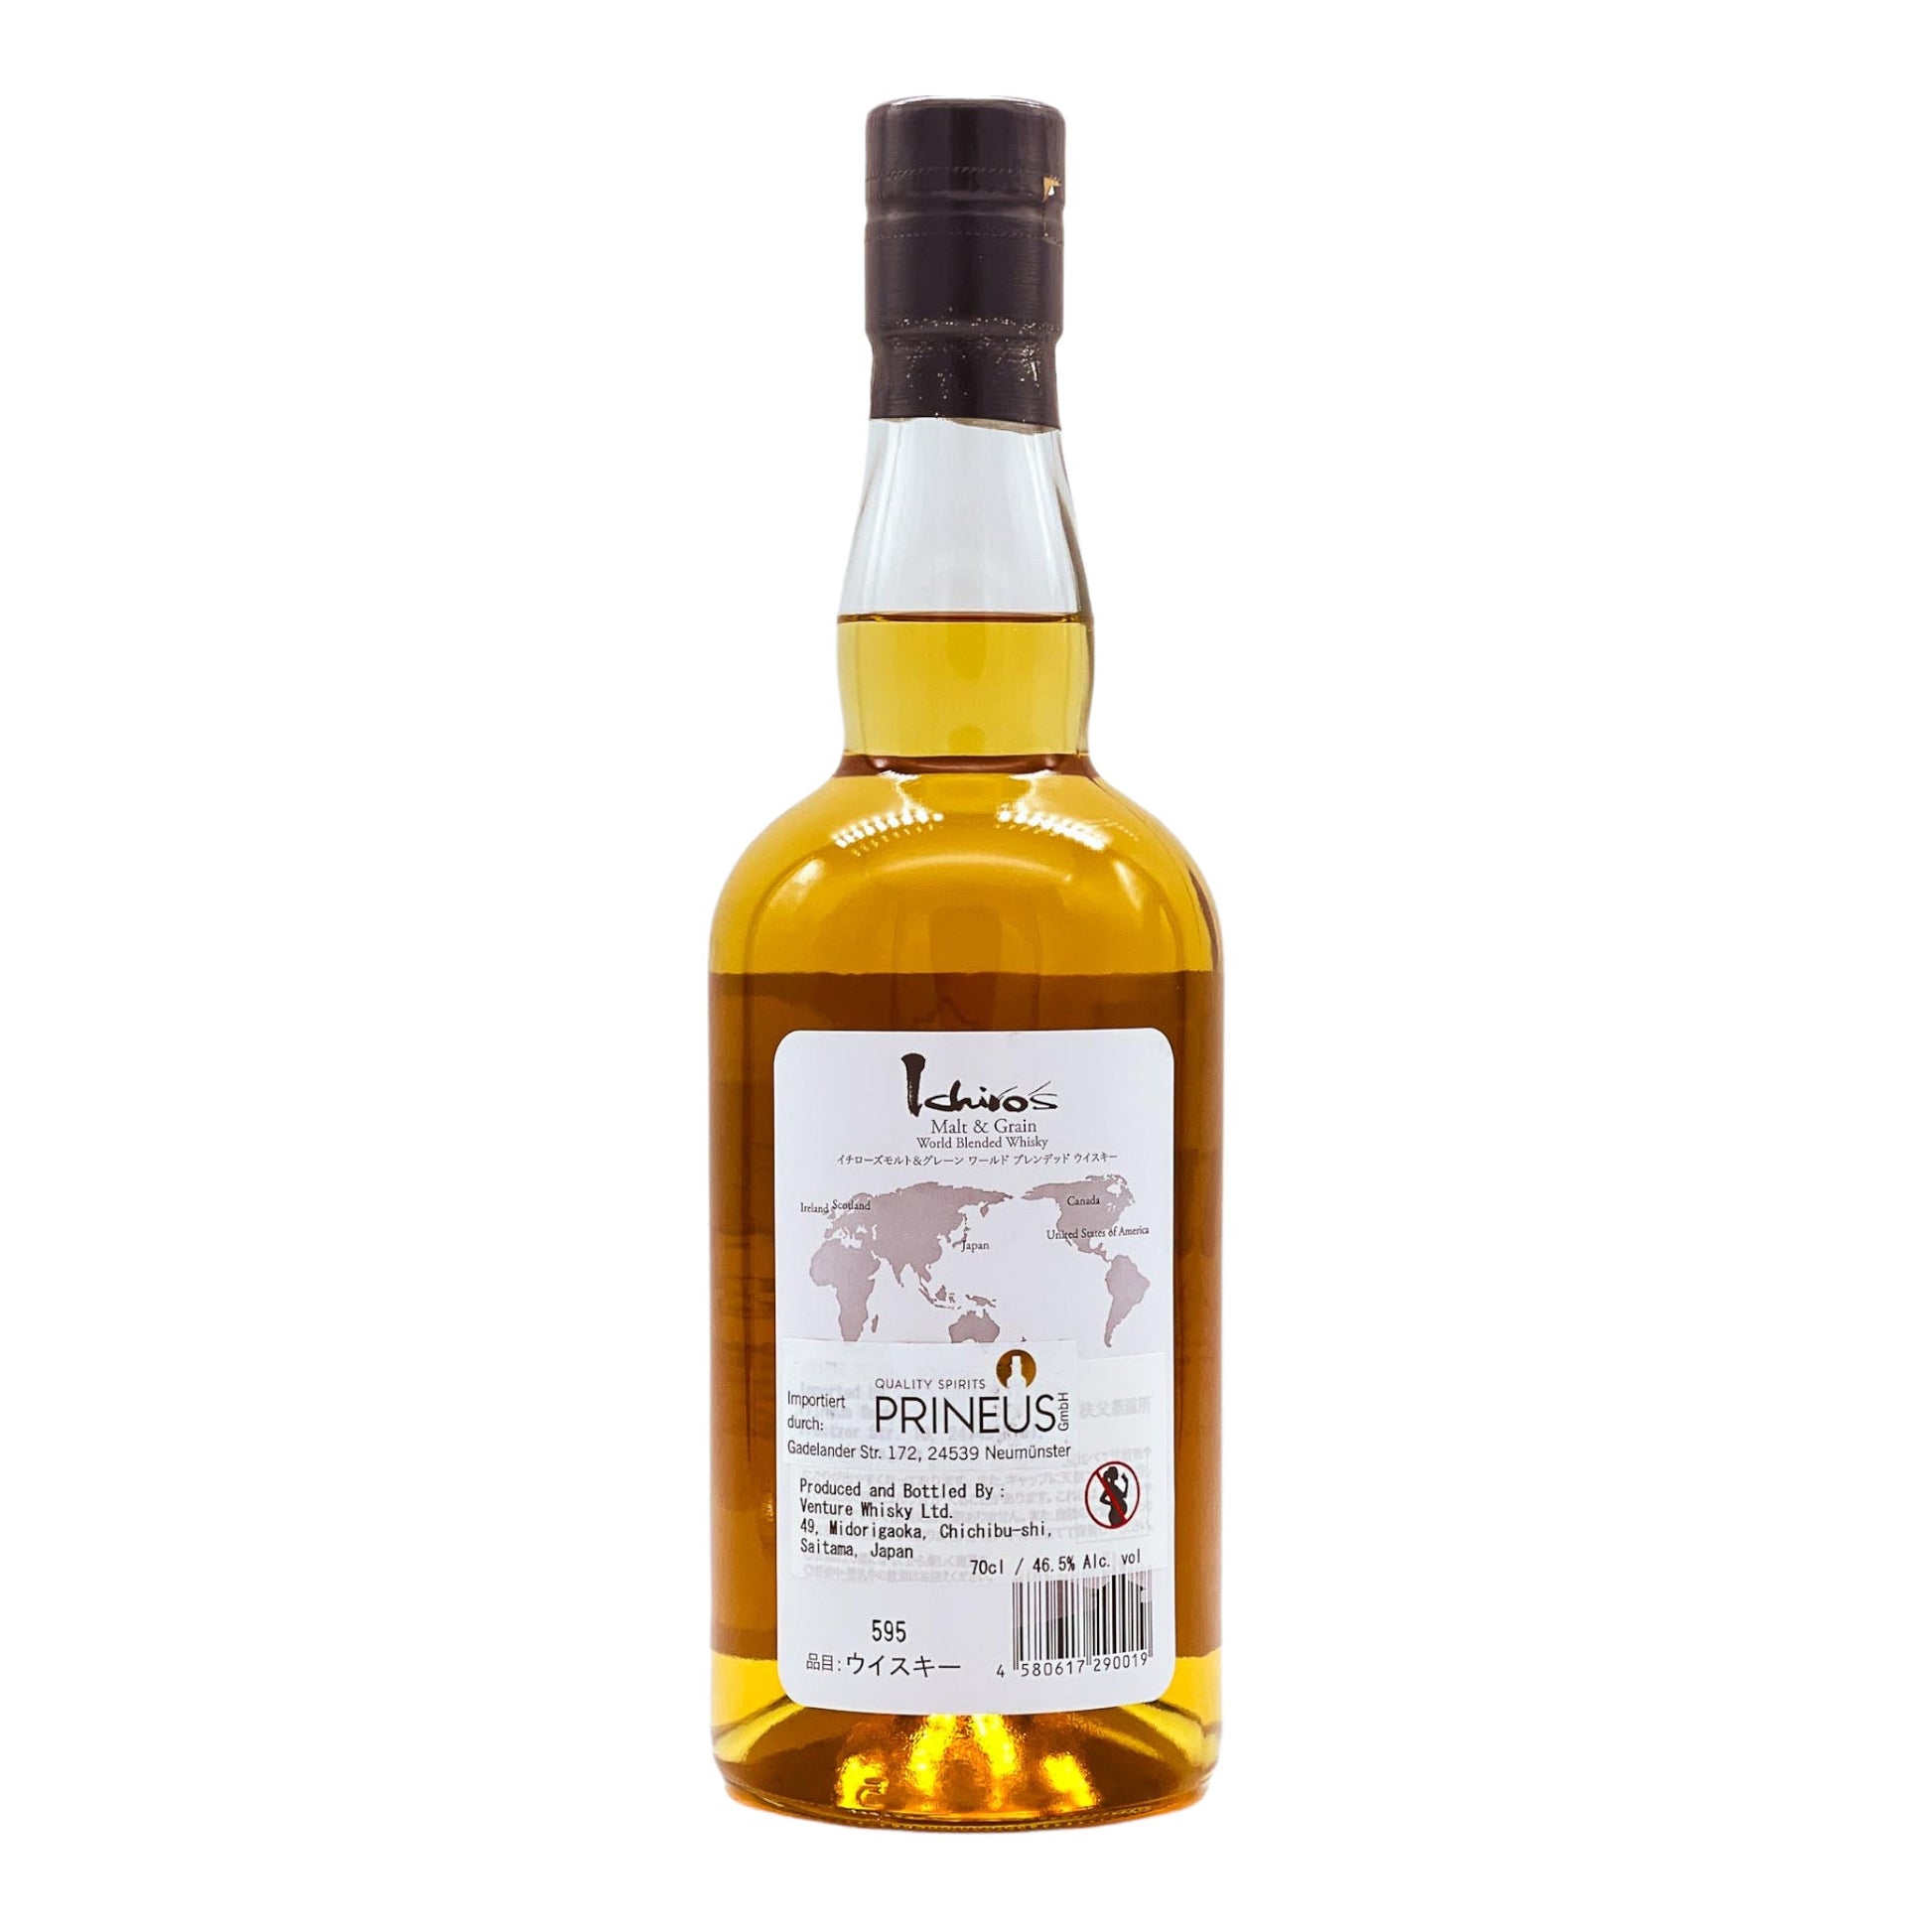 Chichibu | Ichiro’s Malt & Grain | Blended Japanese Whisky | 0,7l | 46,5%GET A BOTTLE